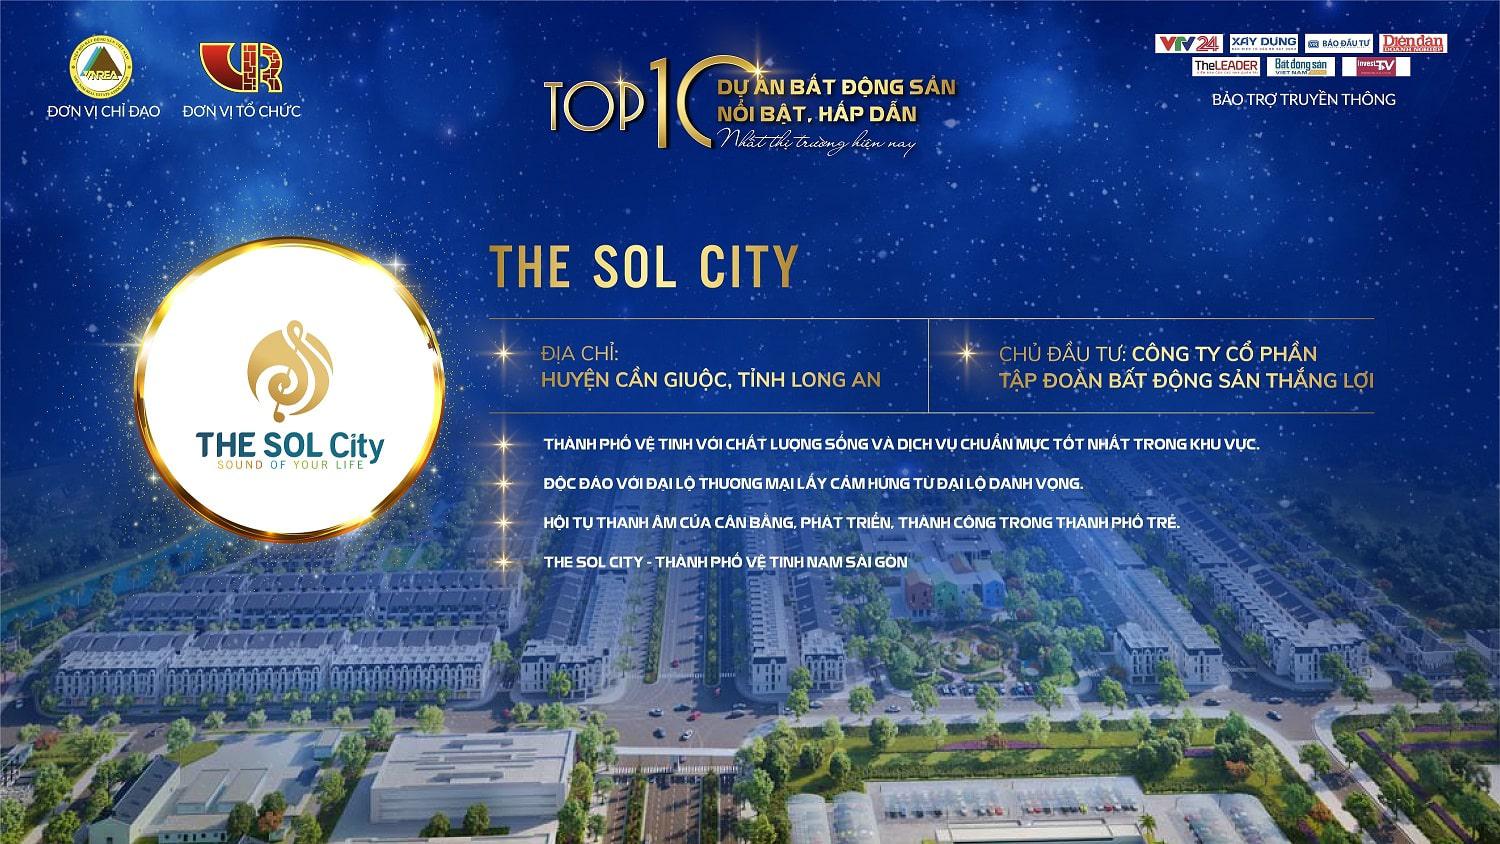 The Sol City được vinh danh trong “Top 10 Dự án Bất động sản nổi bật, hấp dẫn nhất thị trường” năm 2021